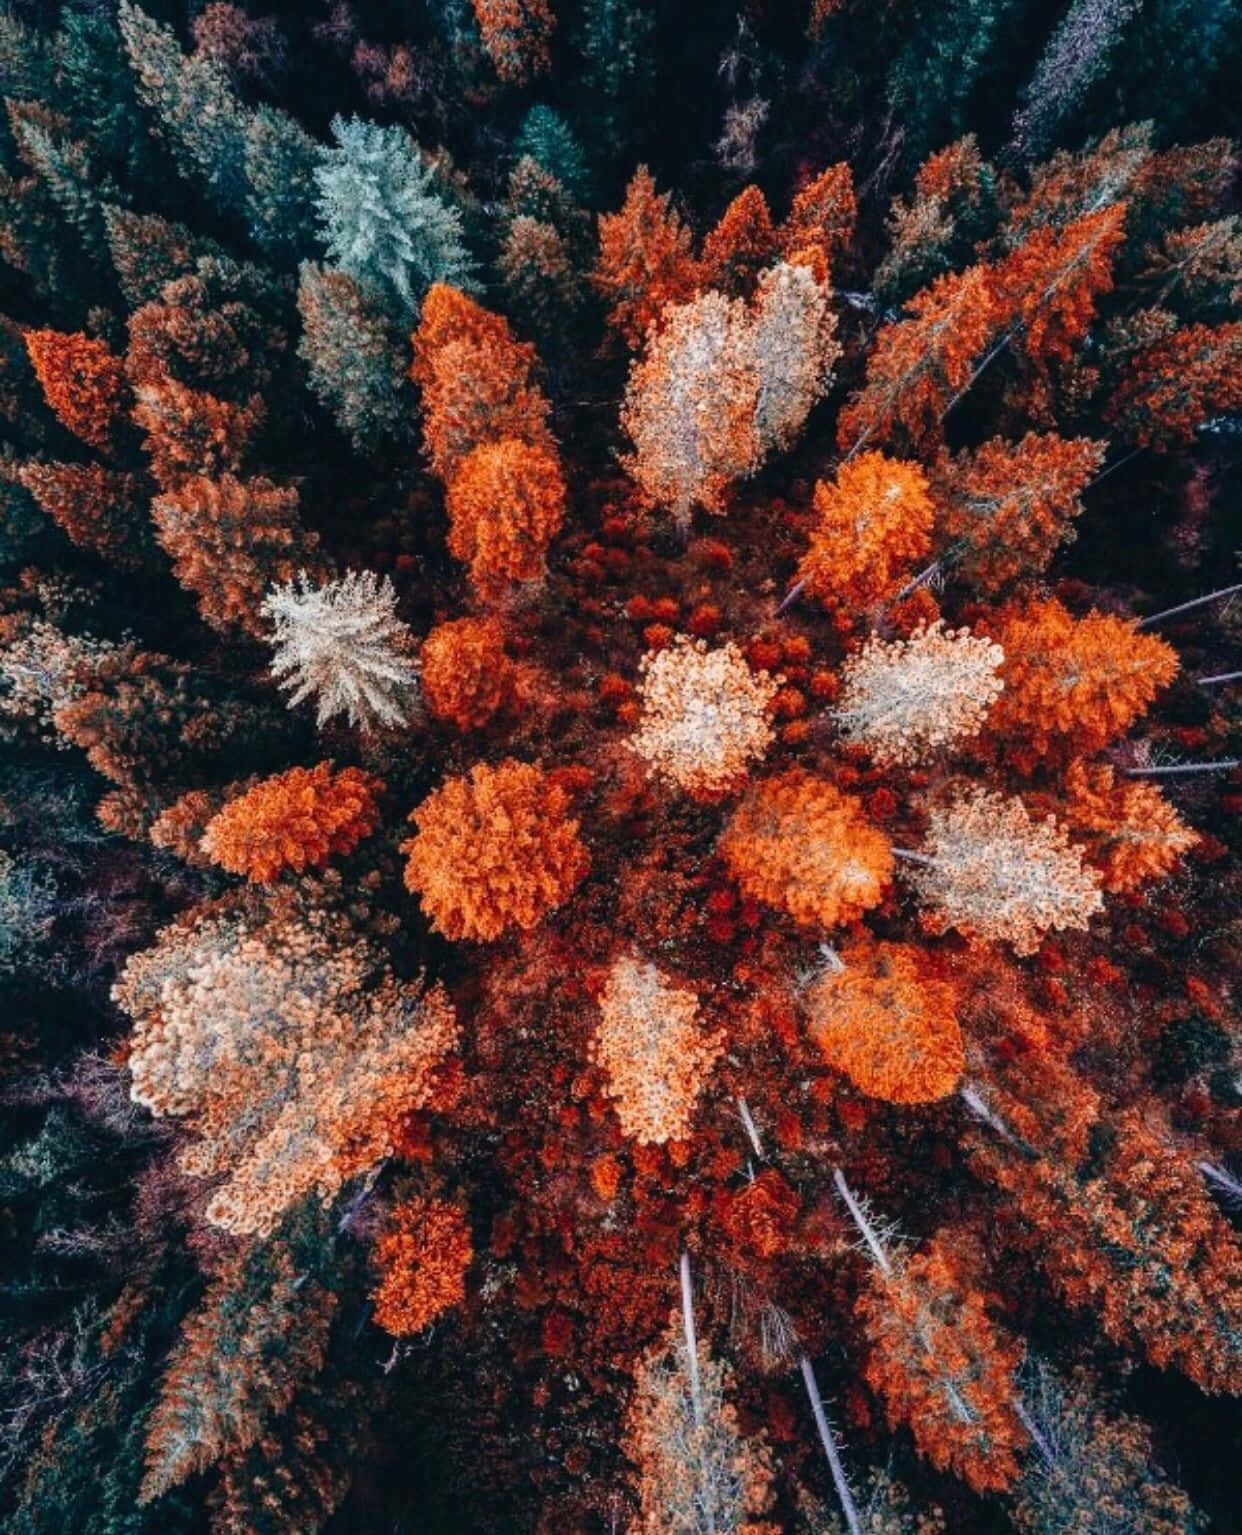 Bildfange Die Farben Des Herbstes Mit Einem Iphone Ein.